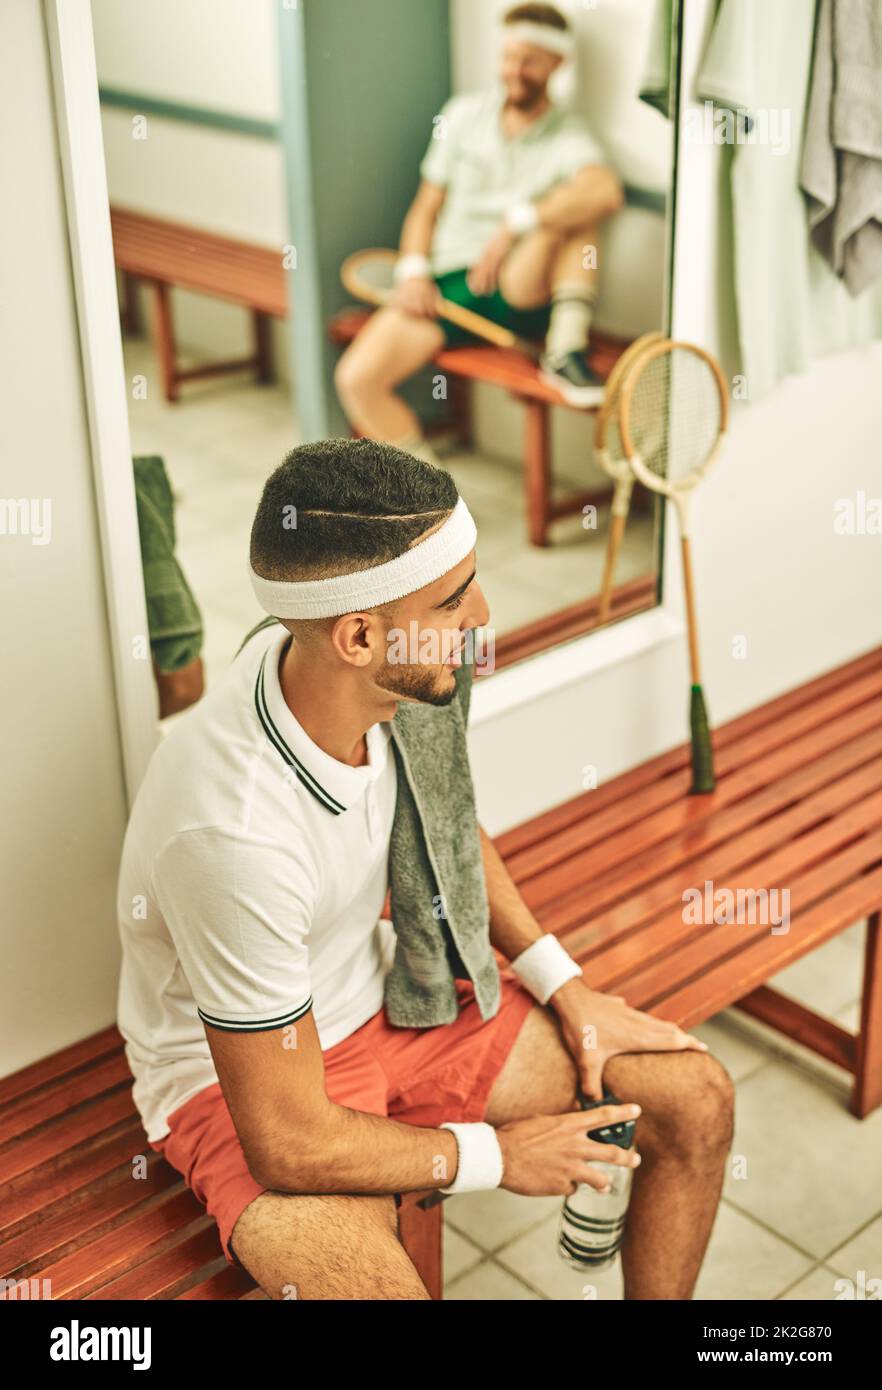 Tout sur cette vie de squash. Coup de jeune homme prenant une pause dans le vestiaire après une partie de squash. Banque D'Images